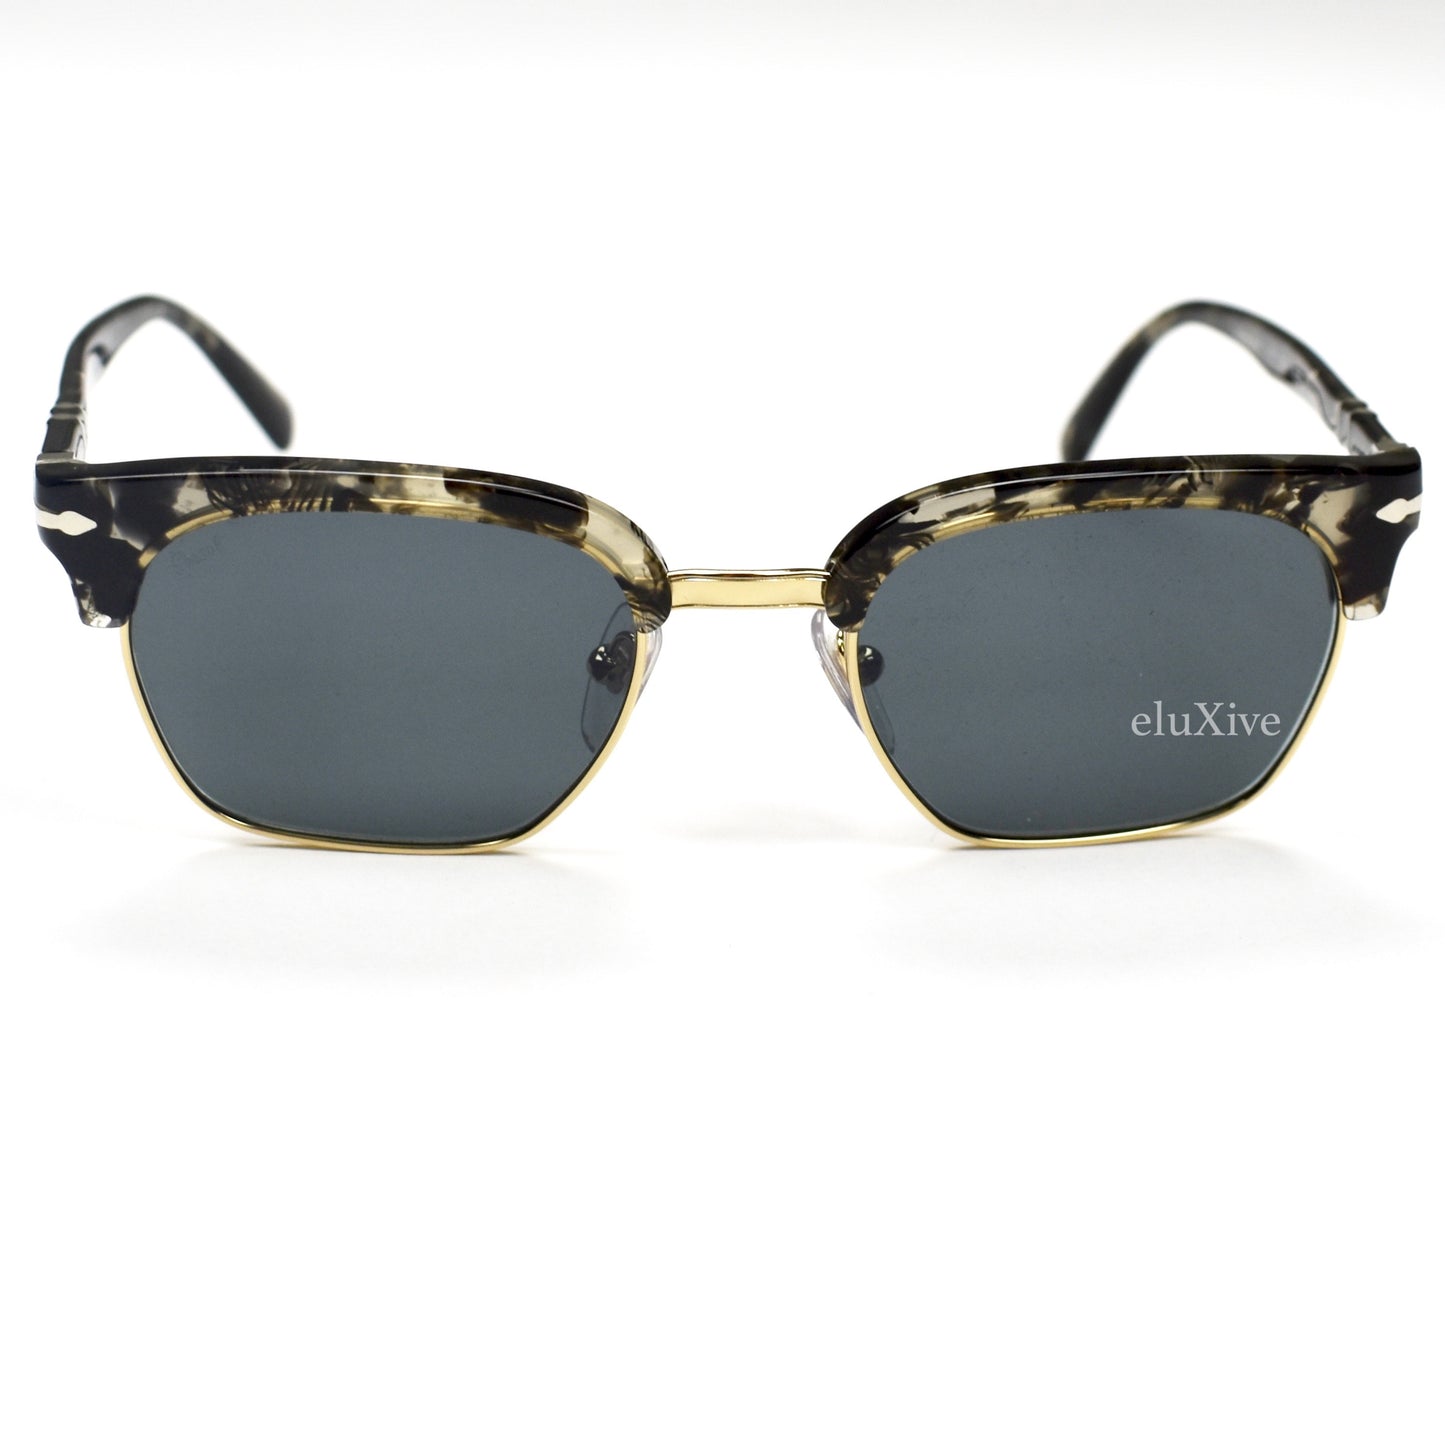 Persol - 3199-S Clubmaster Sunglasses (Black)